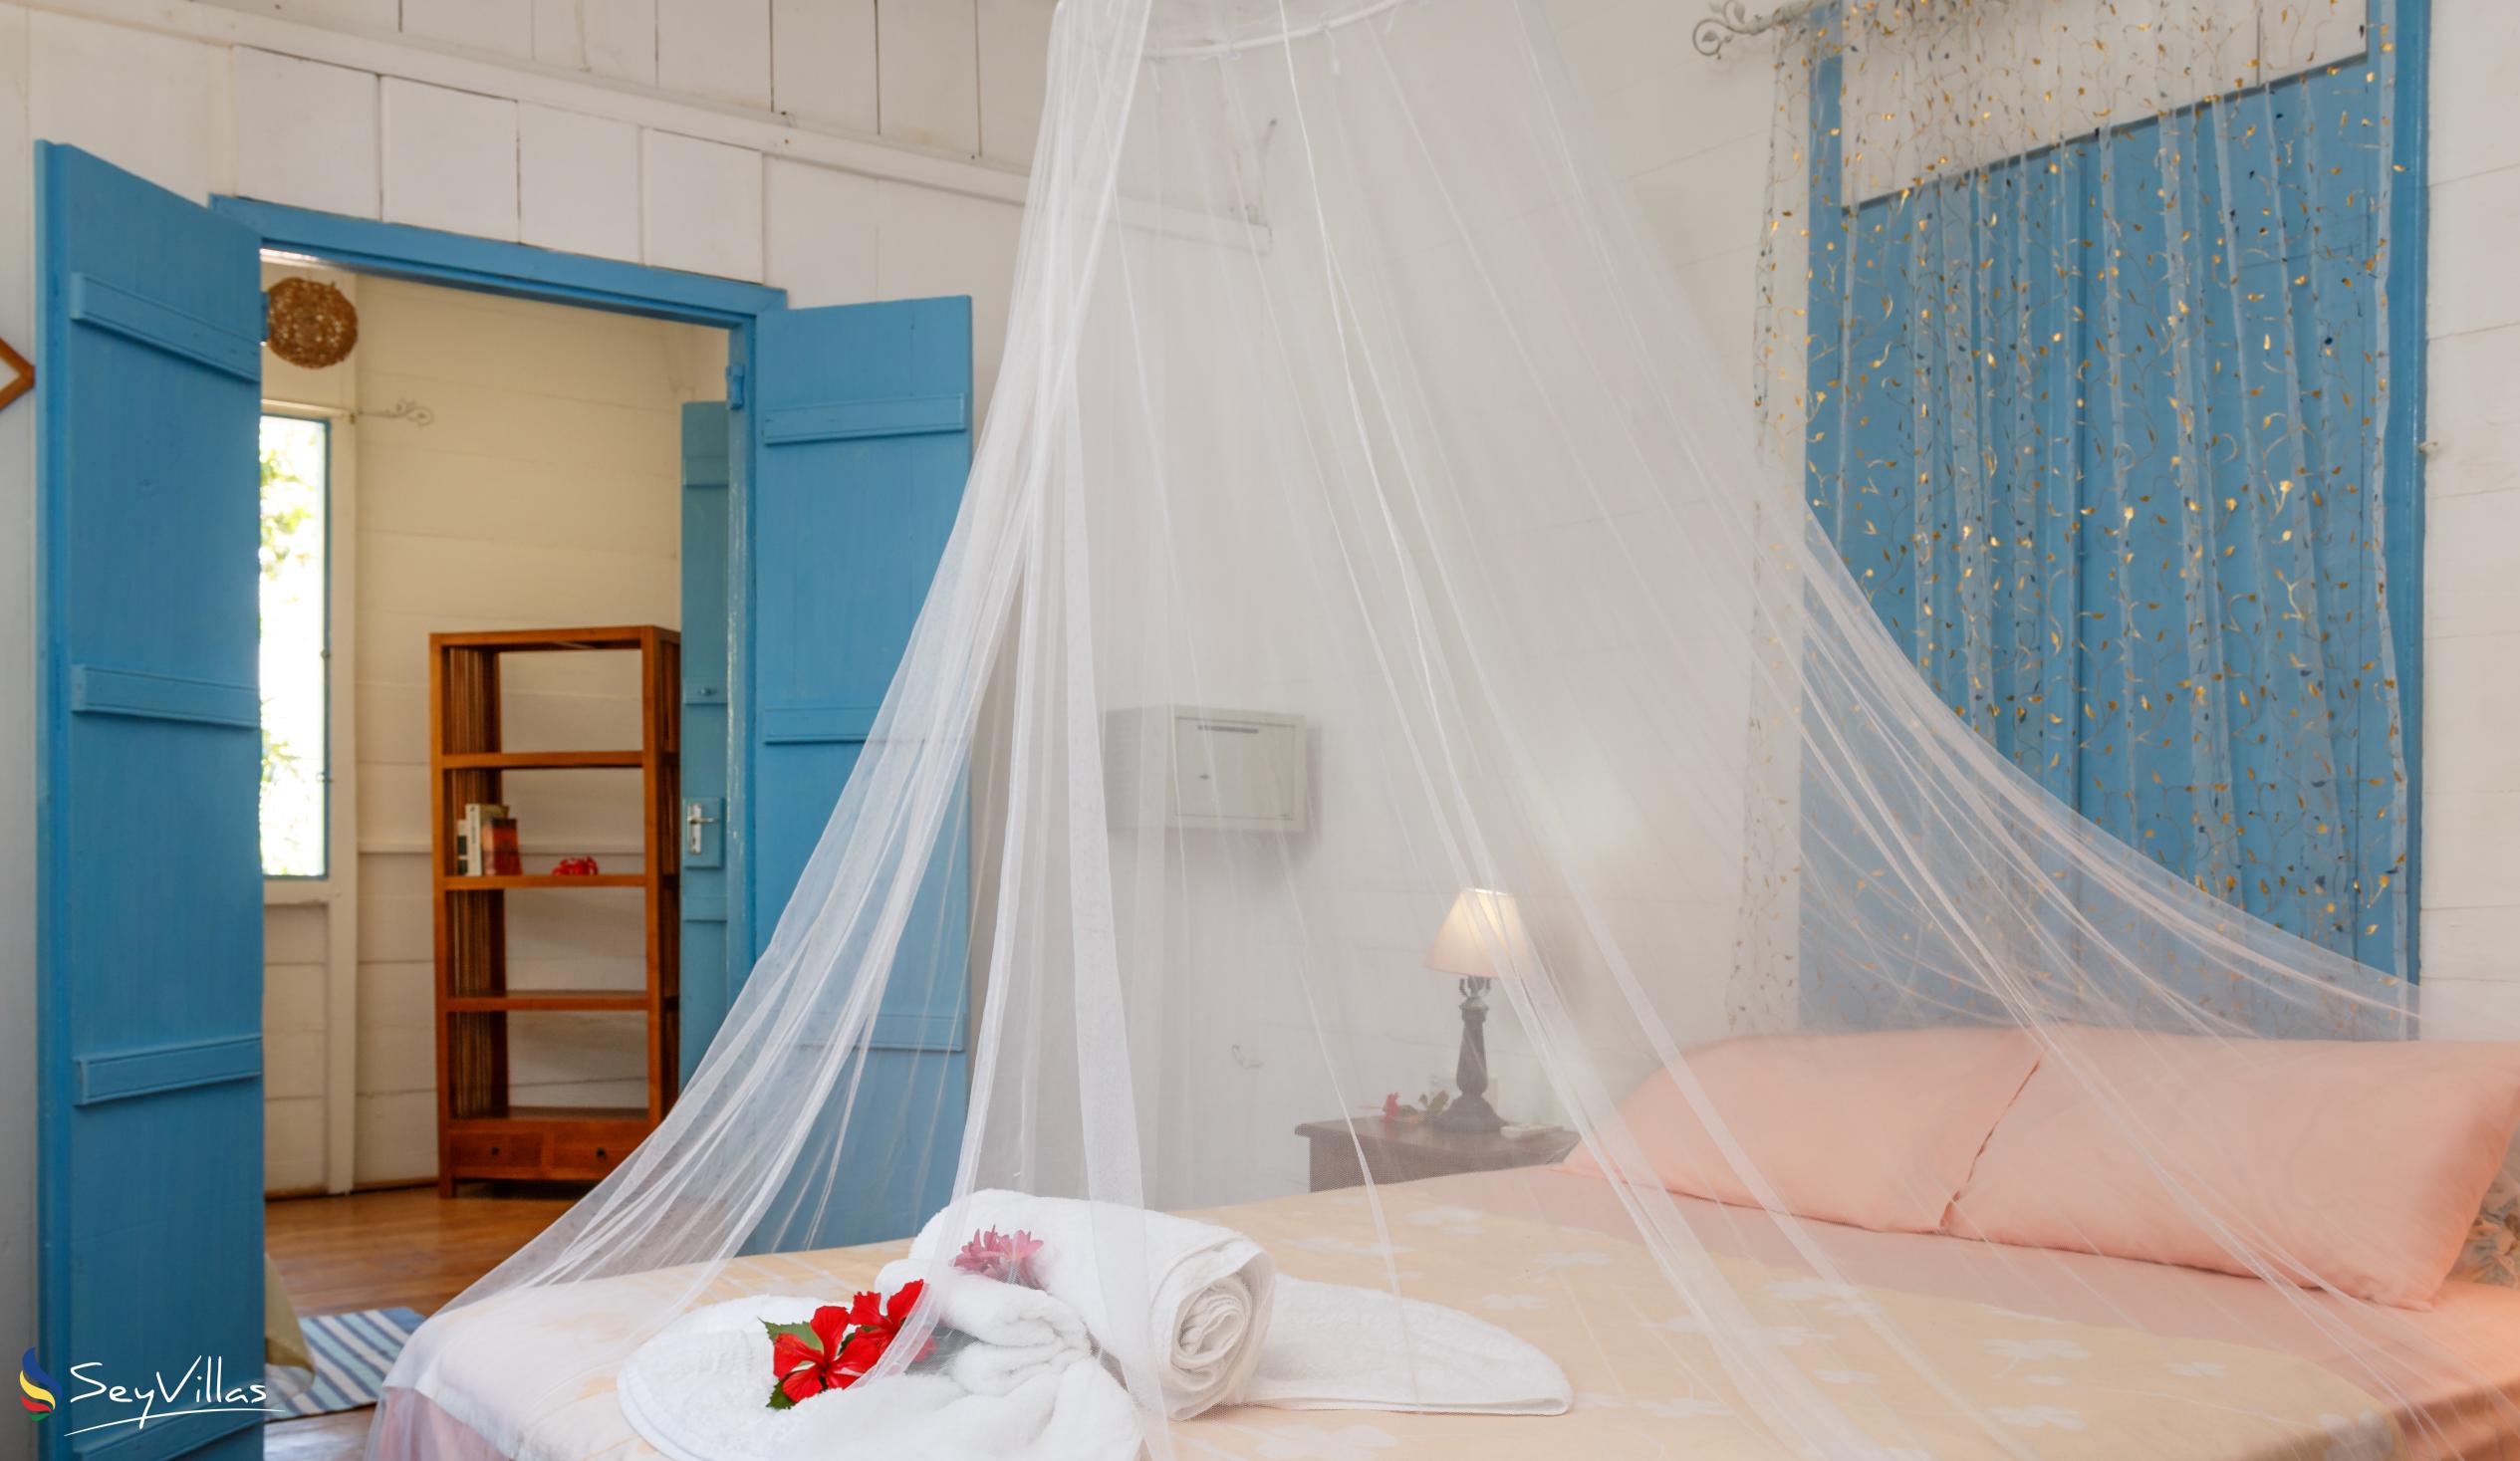 Foto 90: The Beach House (Chateau Martha) - Maison de vacances avec 1 chambre à coucher - Mahé (Seychelles)